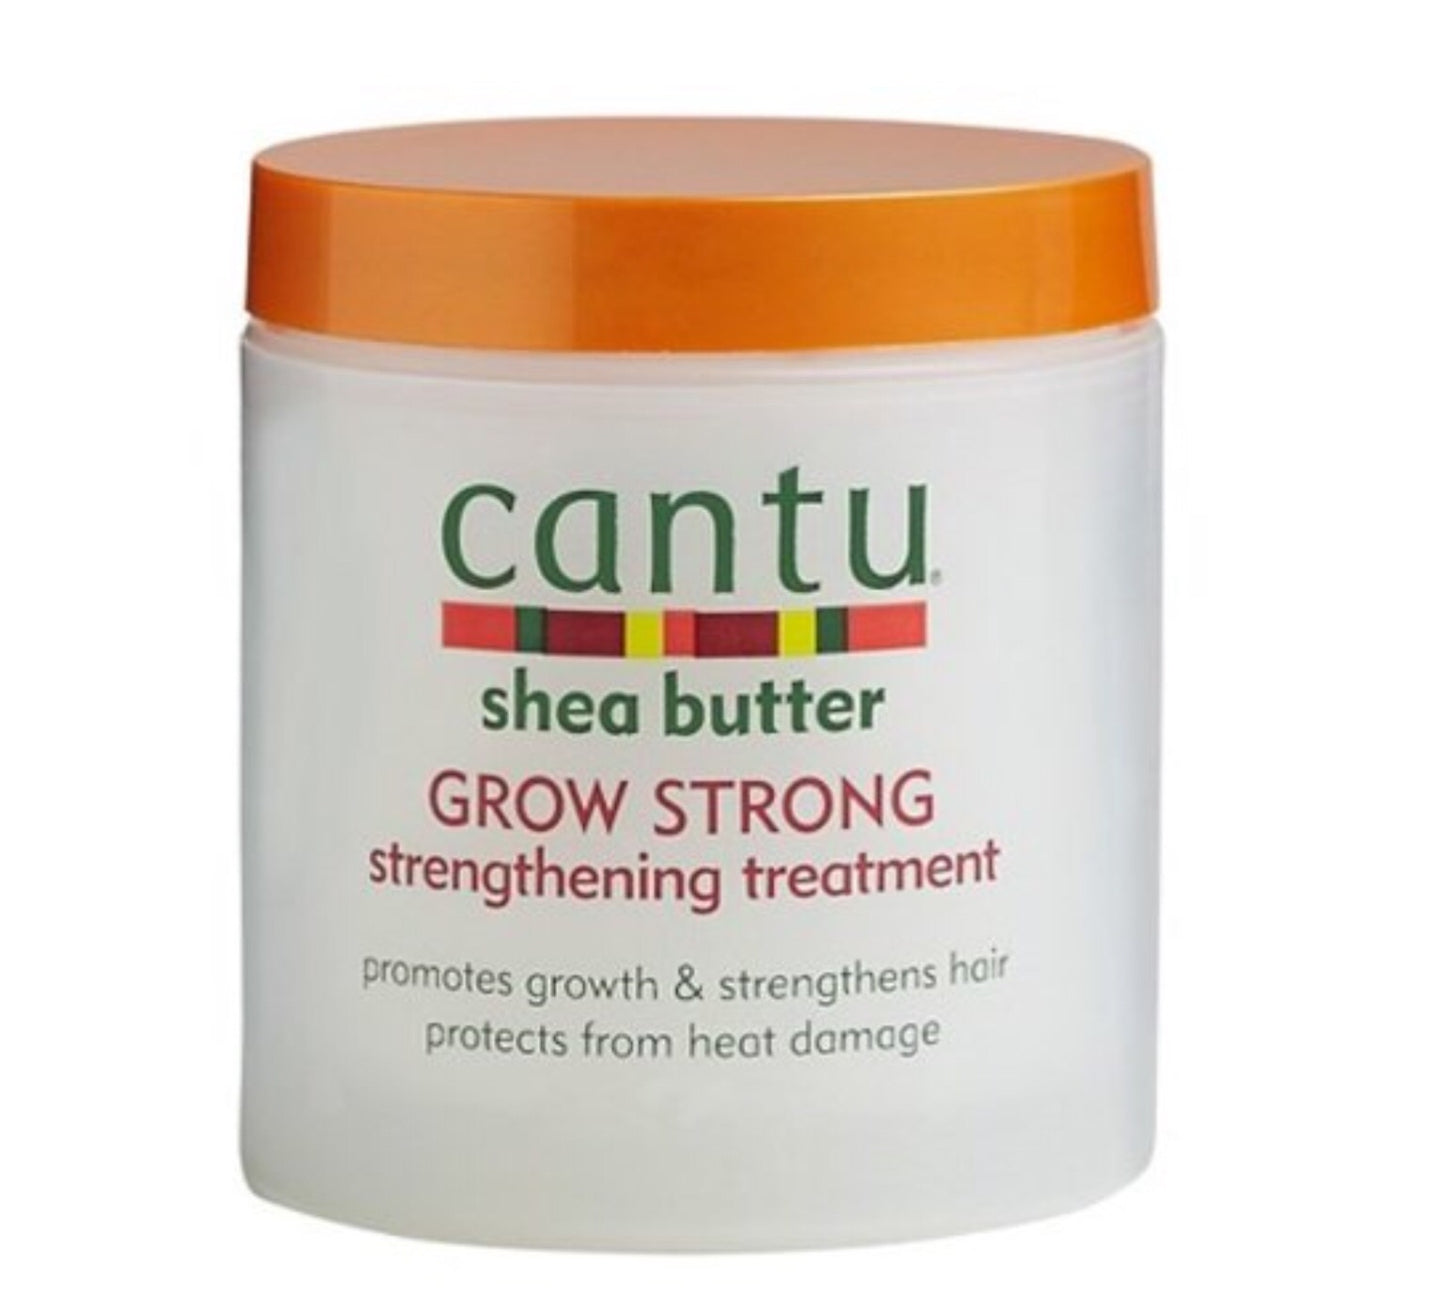 Cantu Shea Butter Grow Strong Strengthening Treatment